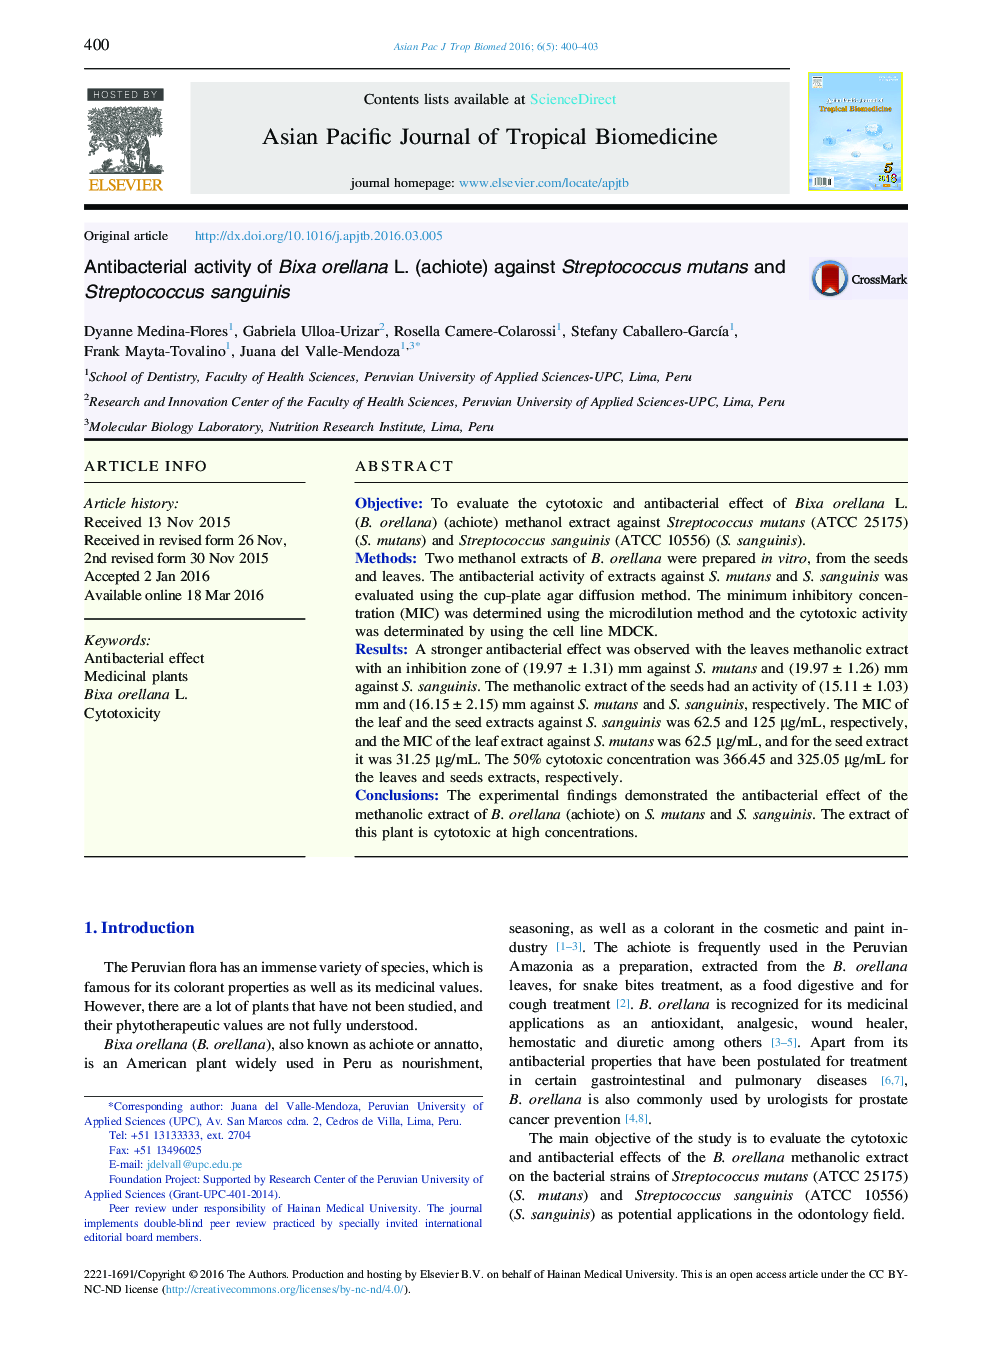 فعالیت ضدباکتری Bixa orellana L. (achiote) در برابر استرپتوکوک موتانس و استرپتوکوک سنگنیس